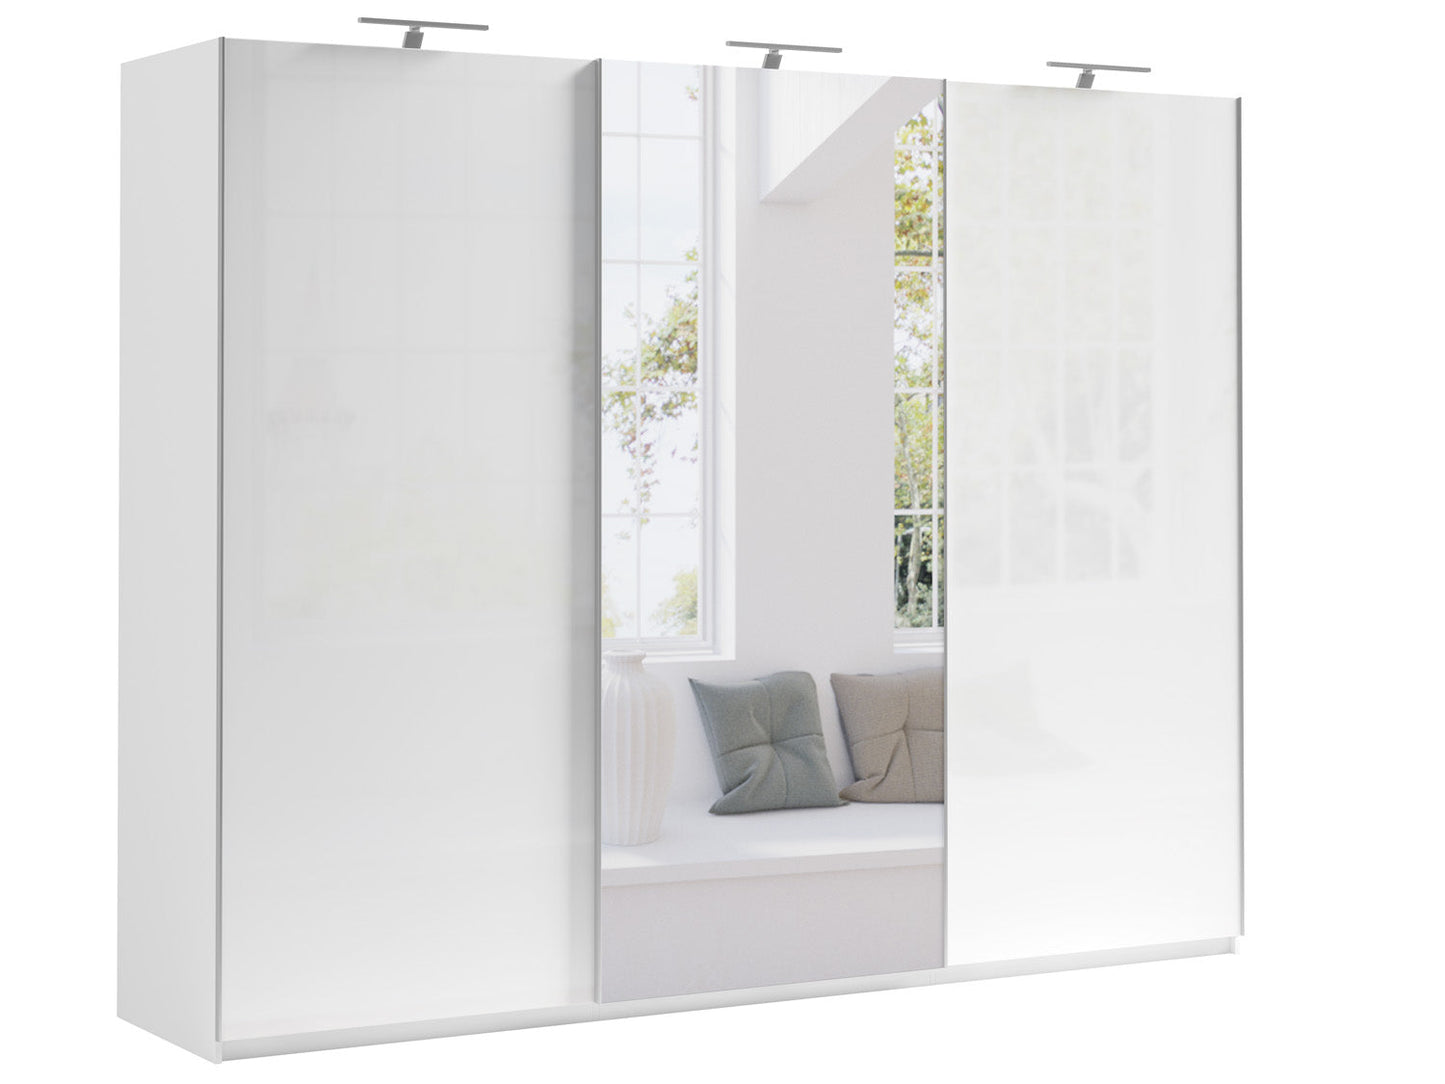 Wunderschöner großer Kleiderschrank MOORE 5 in weißer Farbe mit Spiegel